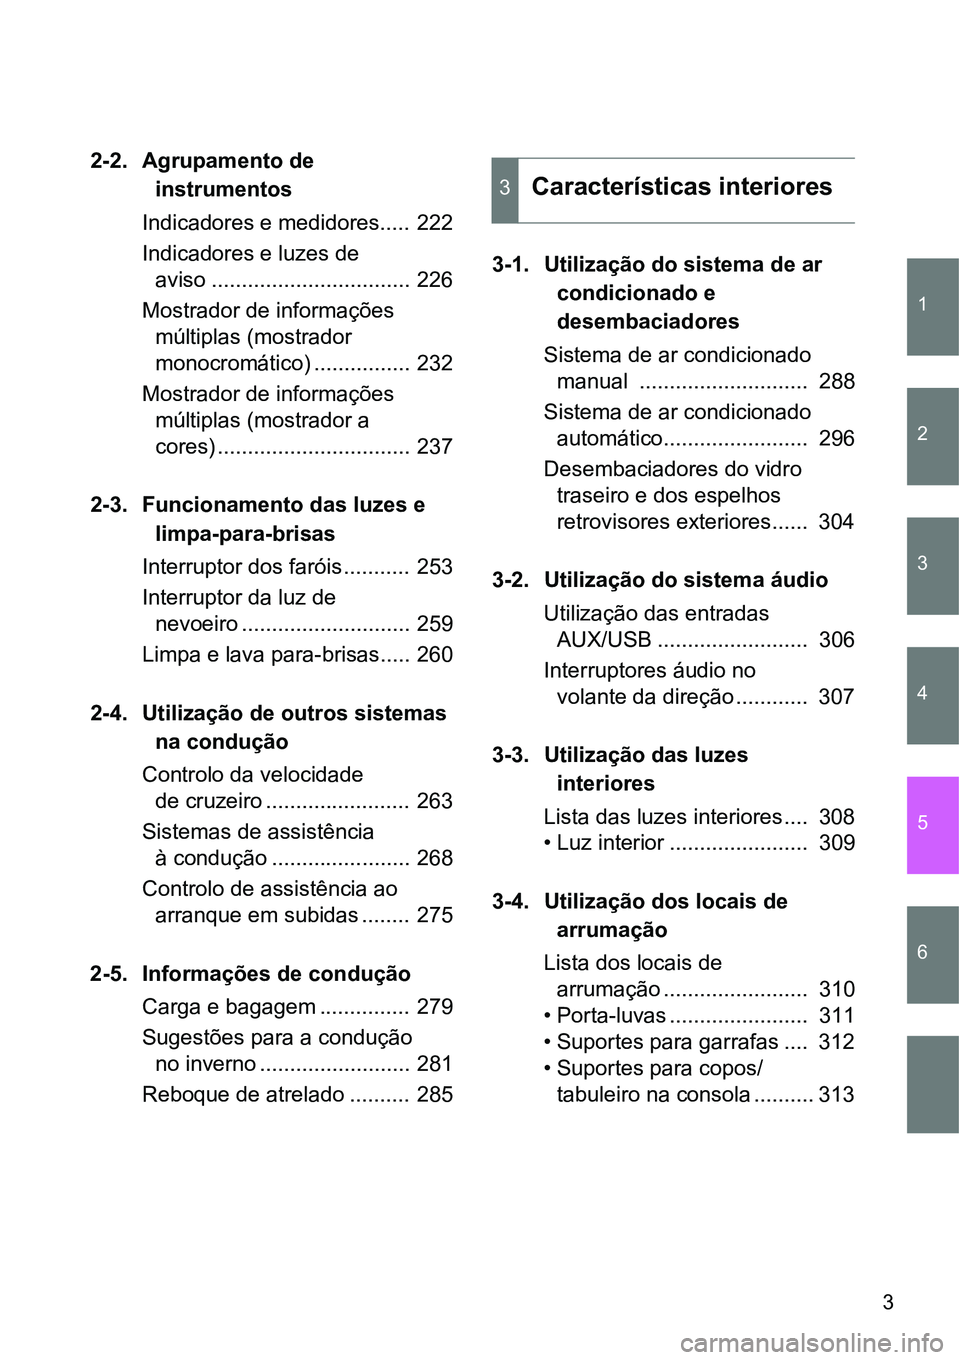 TOYOTA GT86 2018  Manual de utilização (in Portuguese) 1
2
3
4
5
6
3
2-2. Agrupamento de 
instrumentos
Indicadores e medidores..... 222
Indicadores e luzes de 
aviso ................................. 226
Mostrador de informações 
múltiplas (mostrador 
